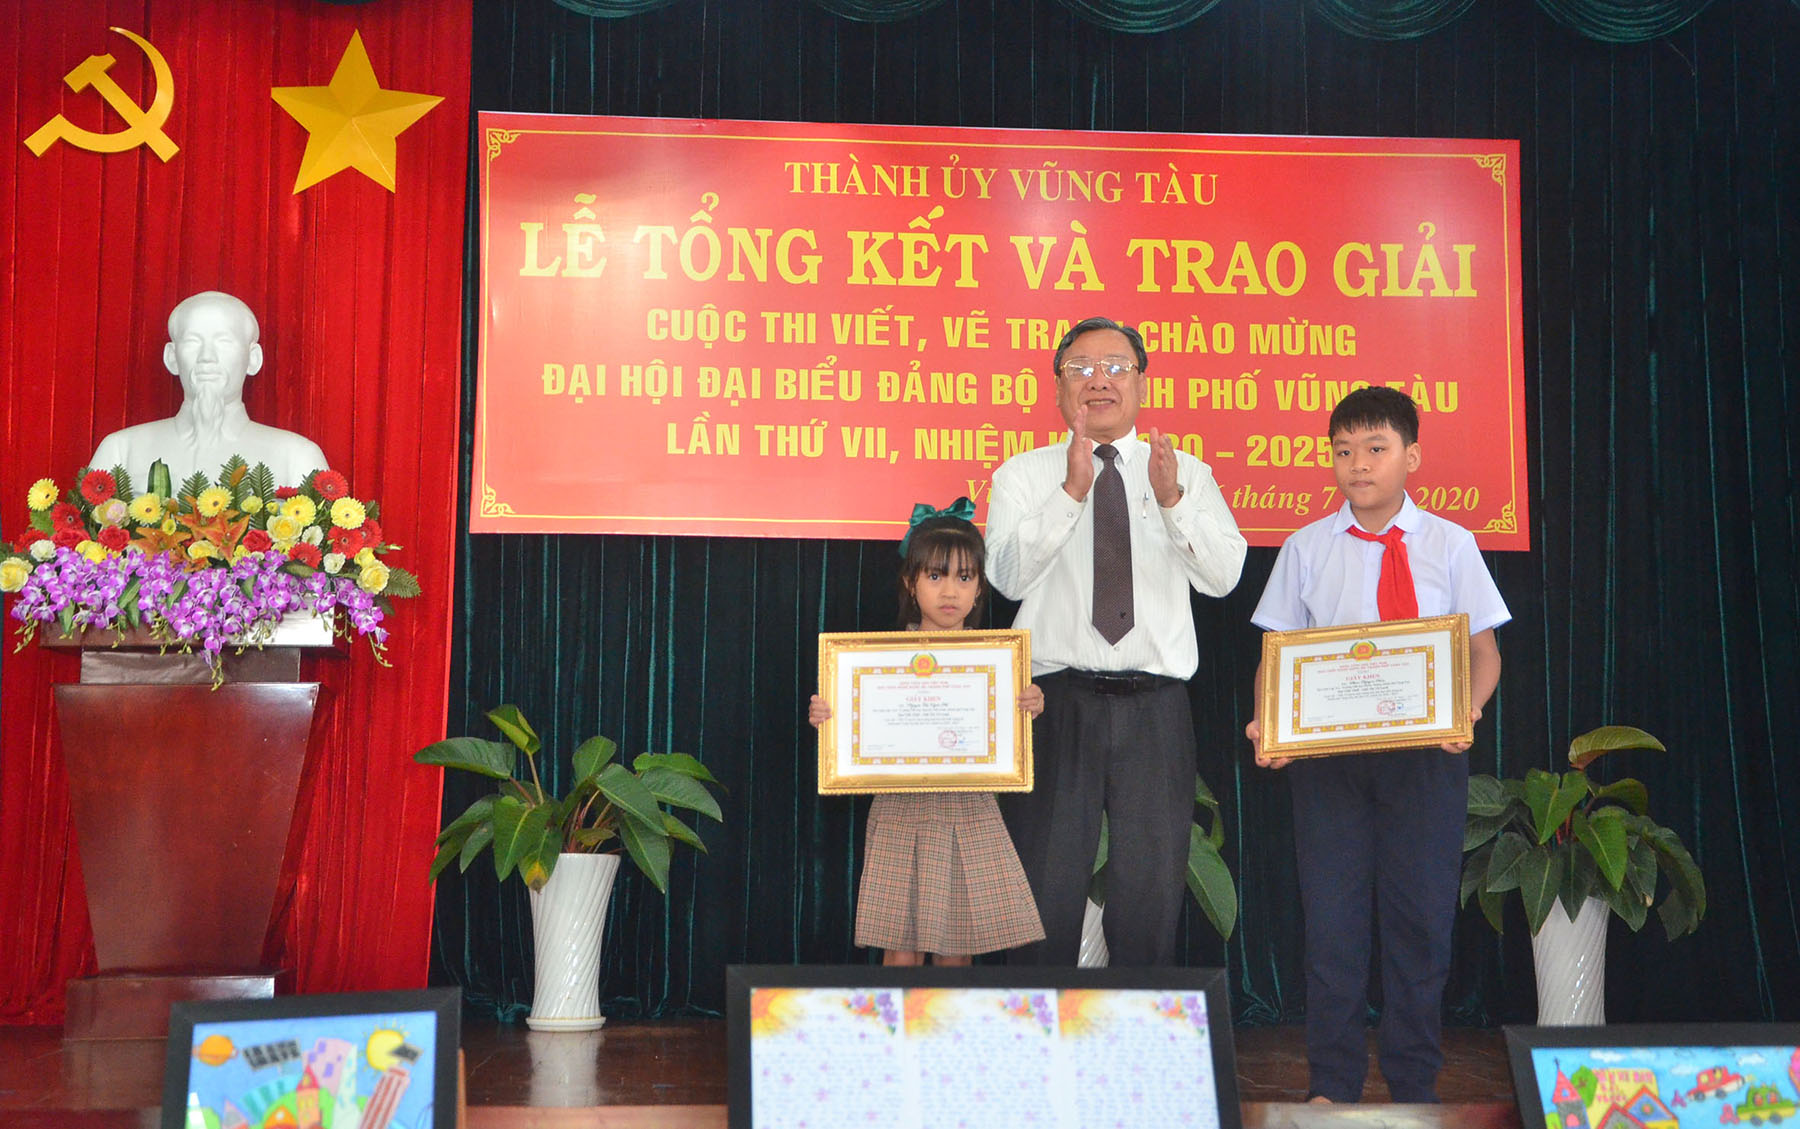 Ông Nguyễn Đăng Minh, Phó Bí thư Thường trực Thành ủy Vũng Tàu trao giải Nhất cho các HS đạt giải thi vẽ tranh.